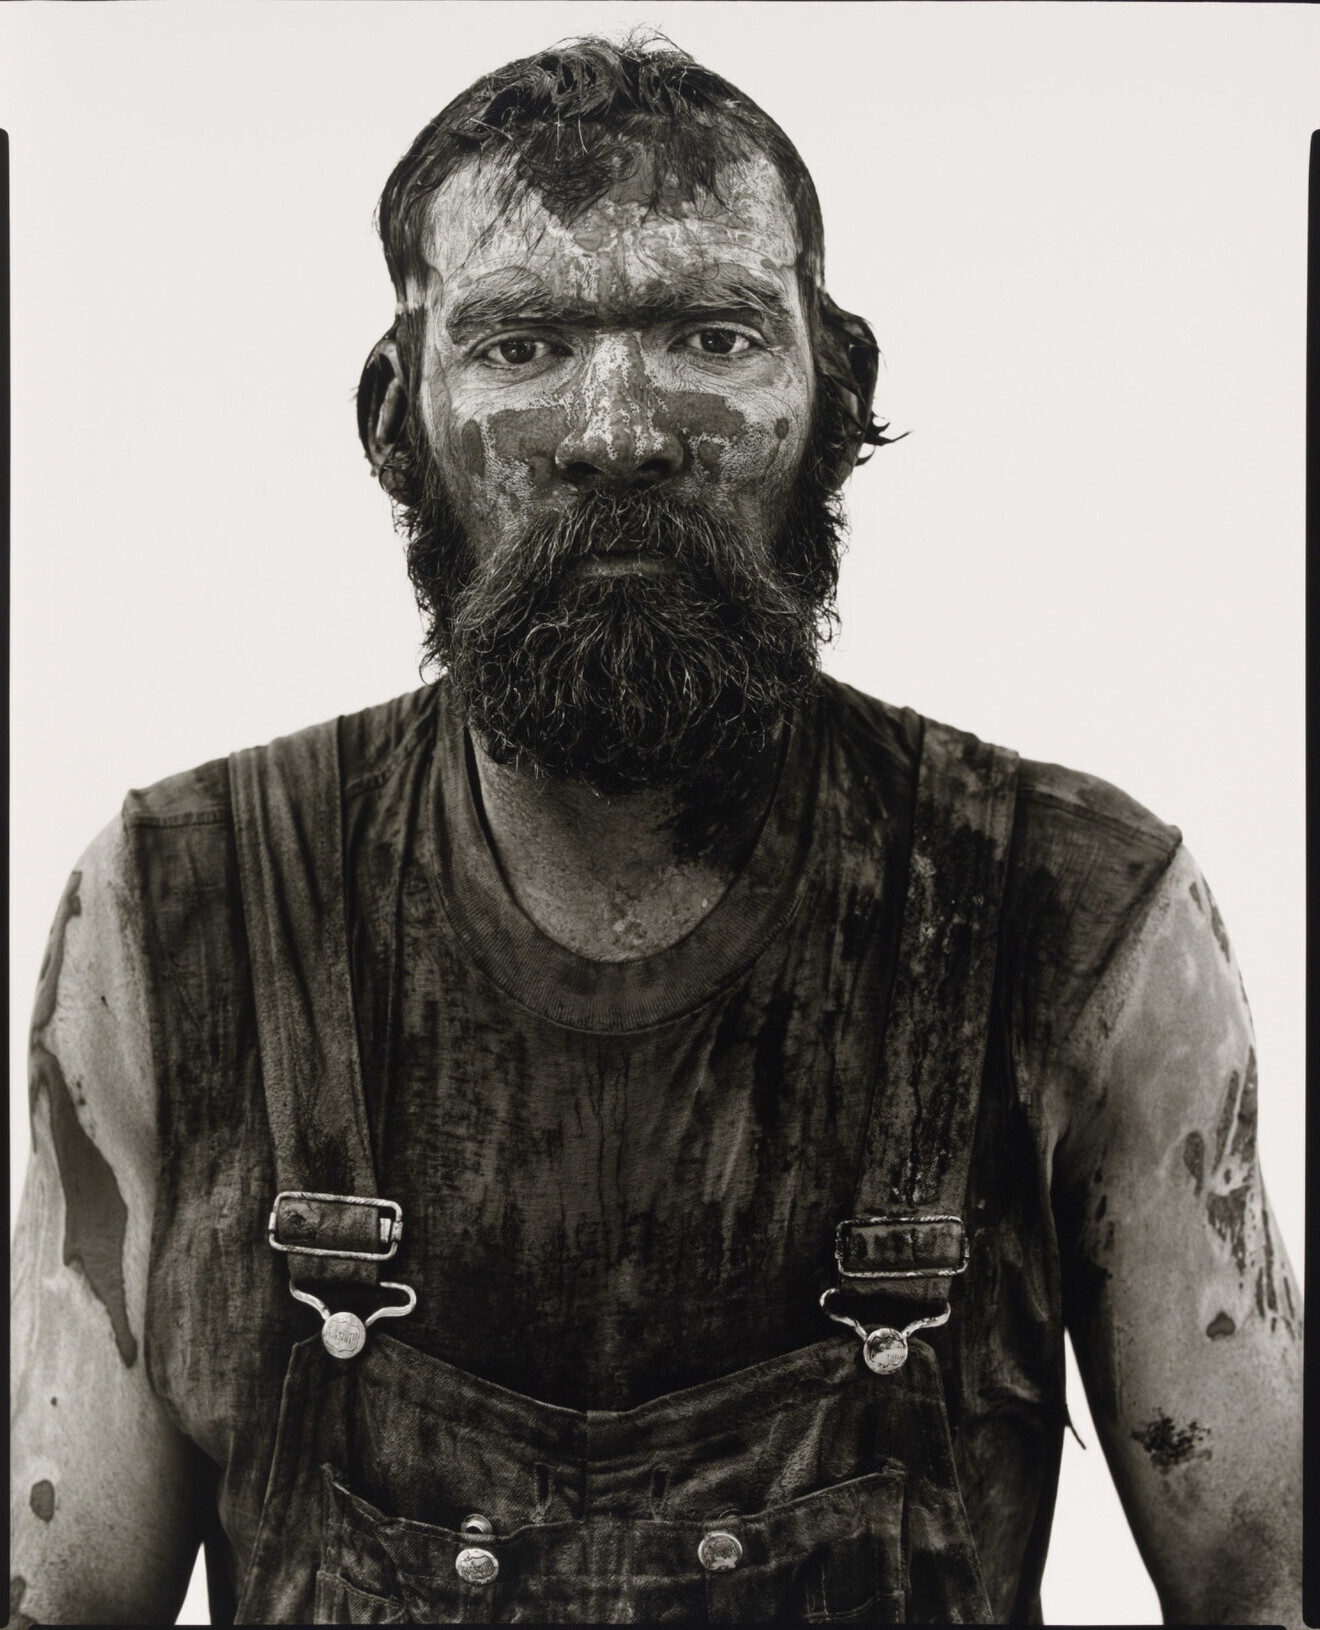 Рэд Оуэнс, нефтяник, Велма, Оклахома, 1980 г. Фотограф Ричард Аведон